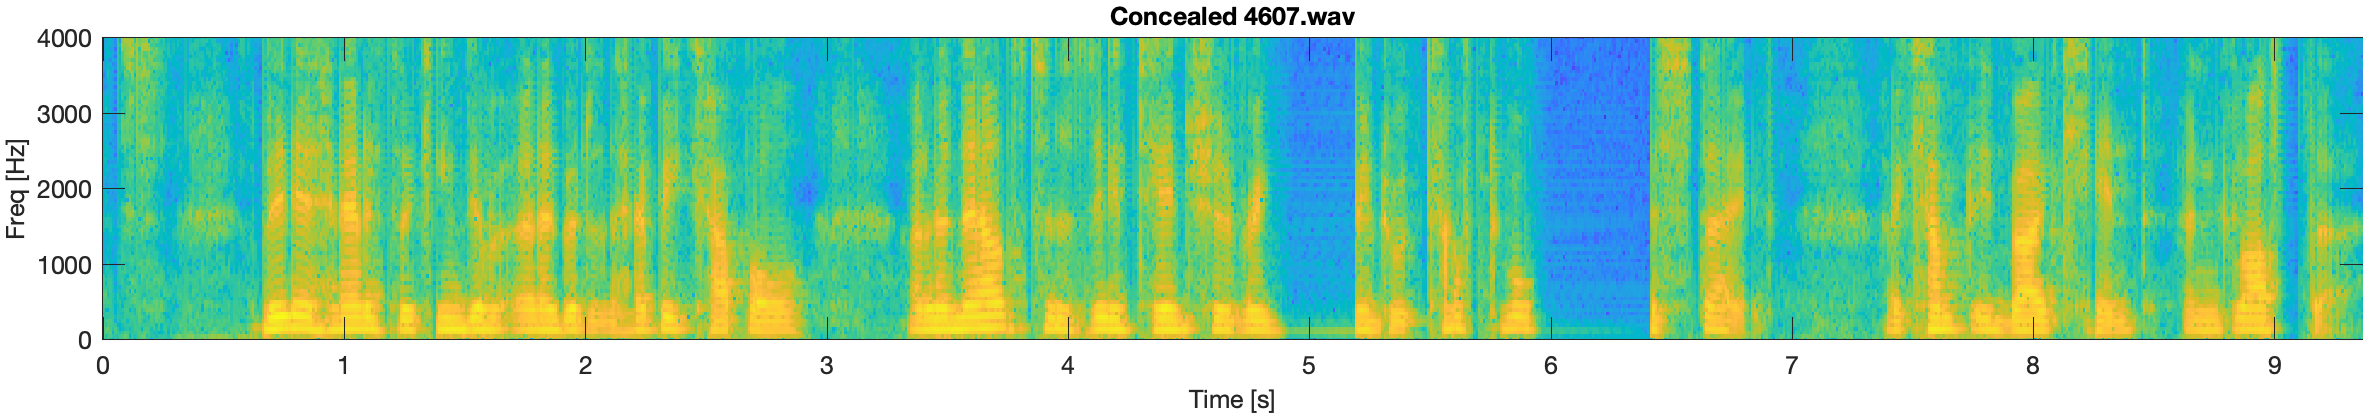 Concealed spectrogram 4607.wav